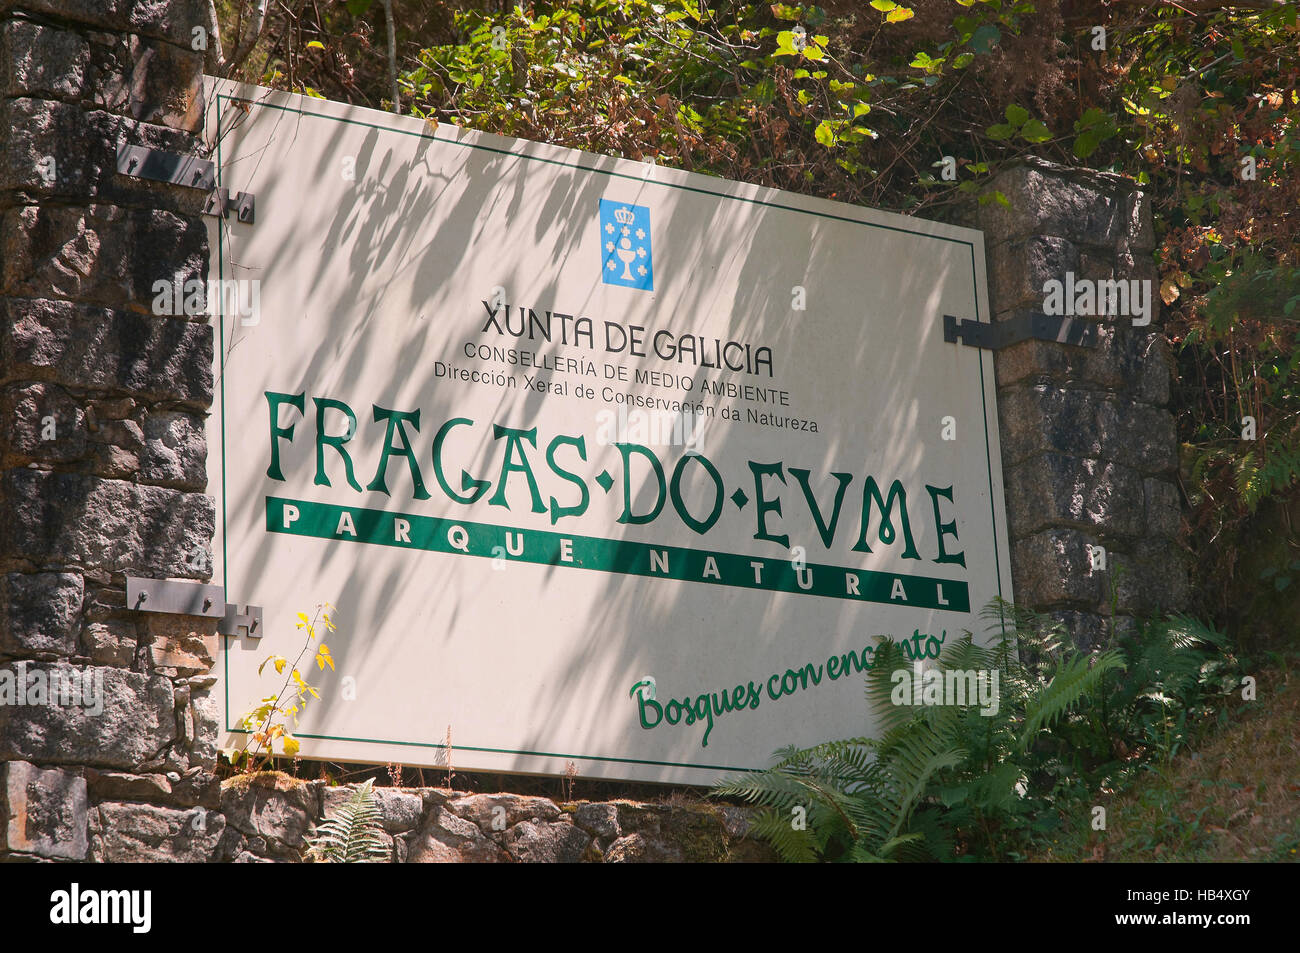 El Parque Natural Fragas do Eume, póster, Pontedeume, La Coruña provincia, región de Galicia, España, Europa Foto de stock